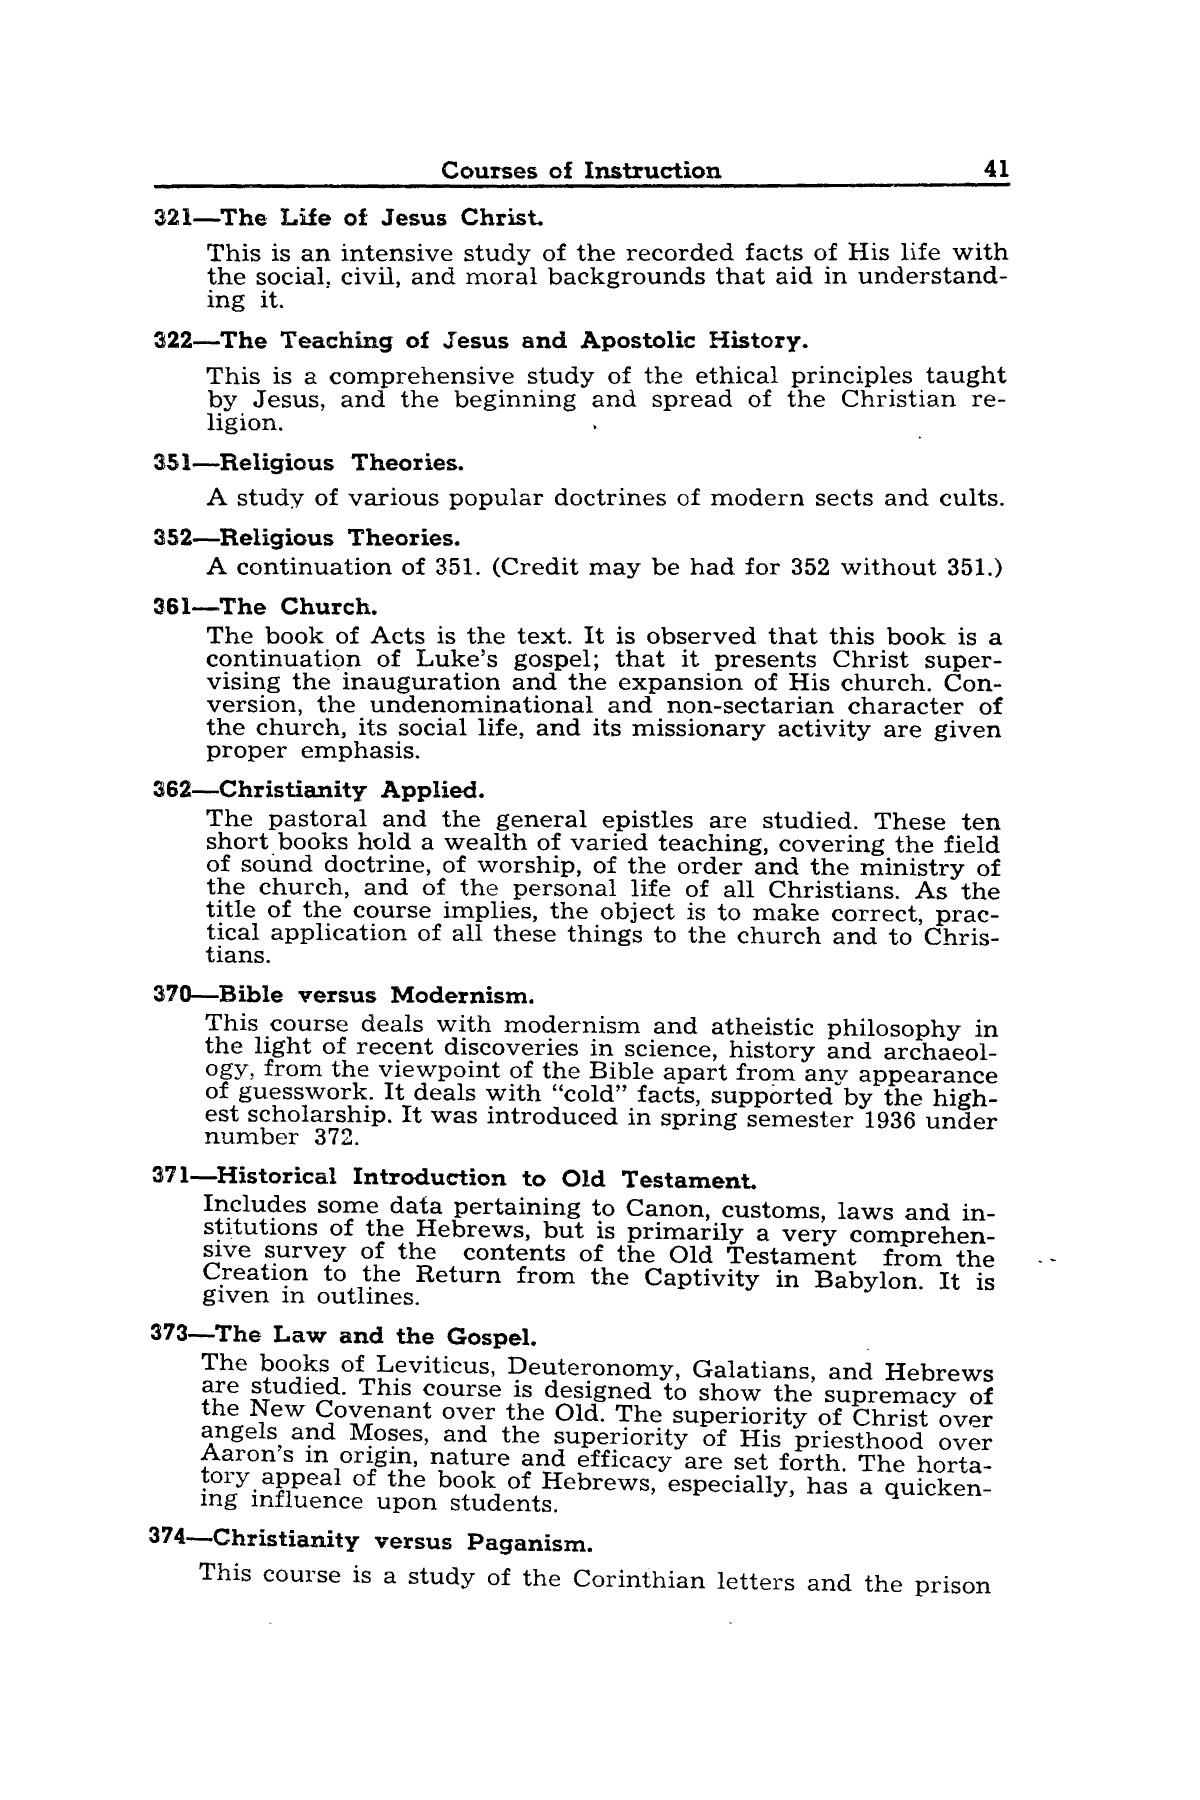 Catalog of Abilene Christian College, 1942-1943
                                                
                                                    41
                                                